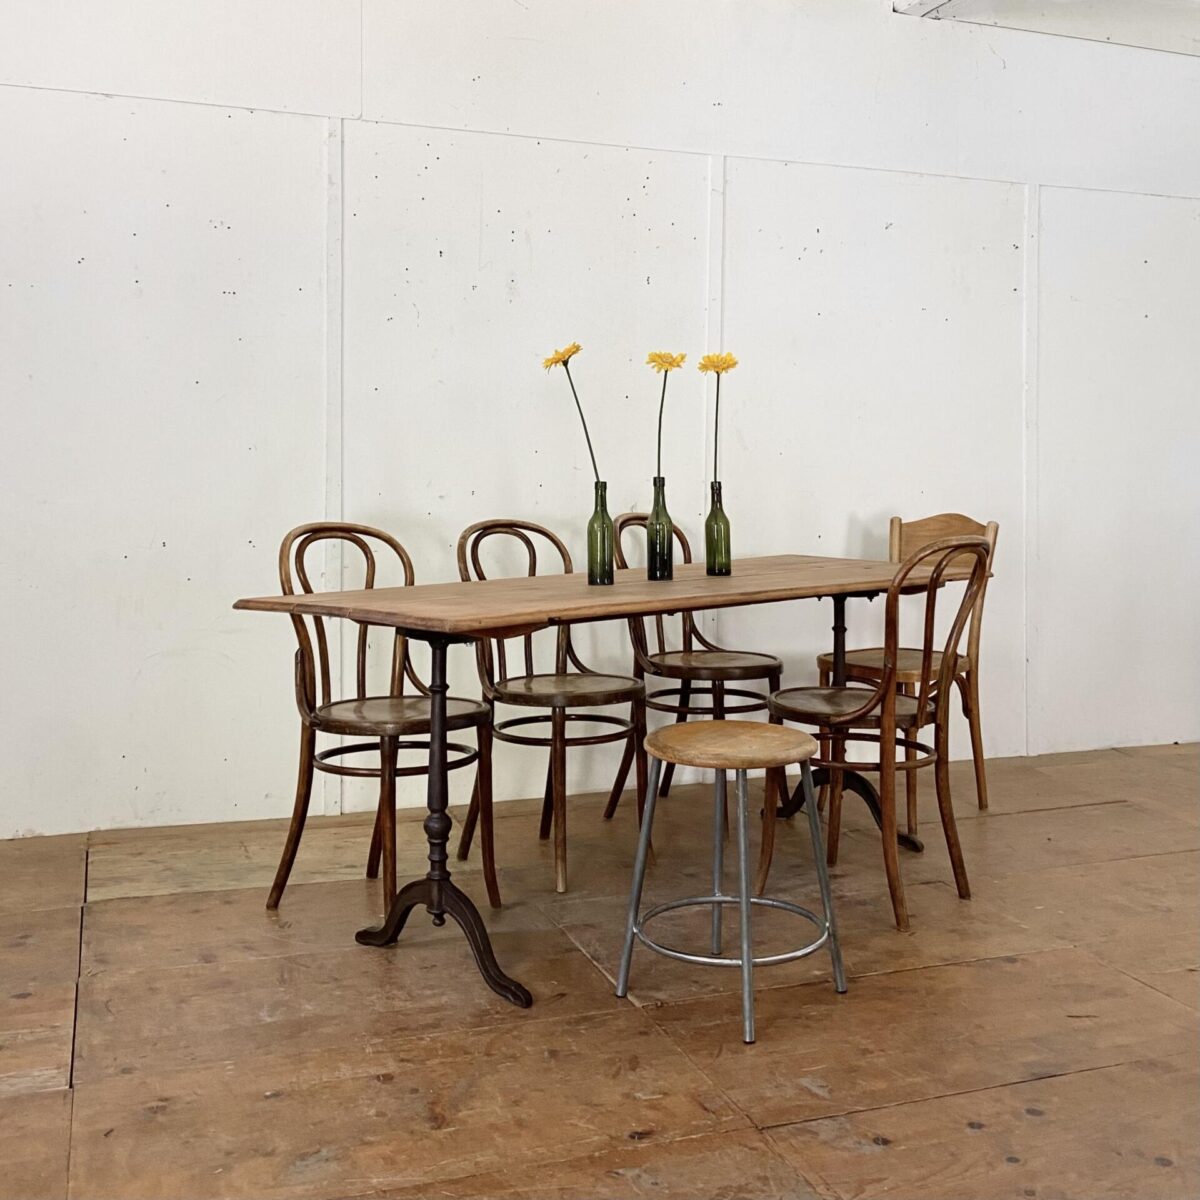 Deuxieme.shop Alter Buchenholz Wirtshaustisch mit Karniskante und Gratleisten. alter Holztisch beizentisch